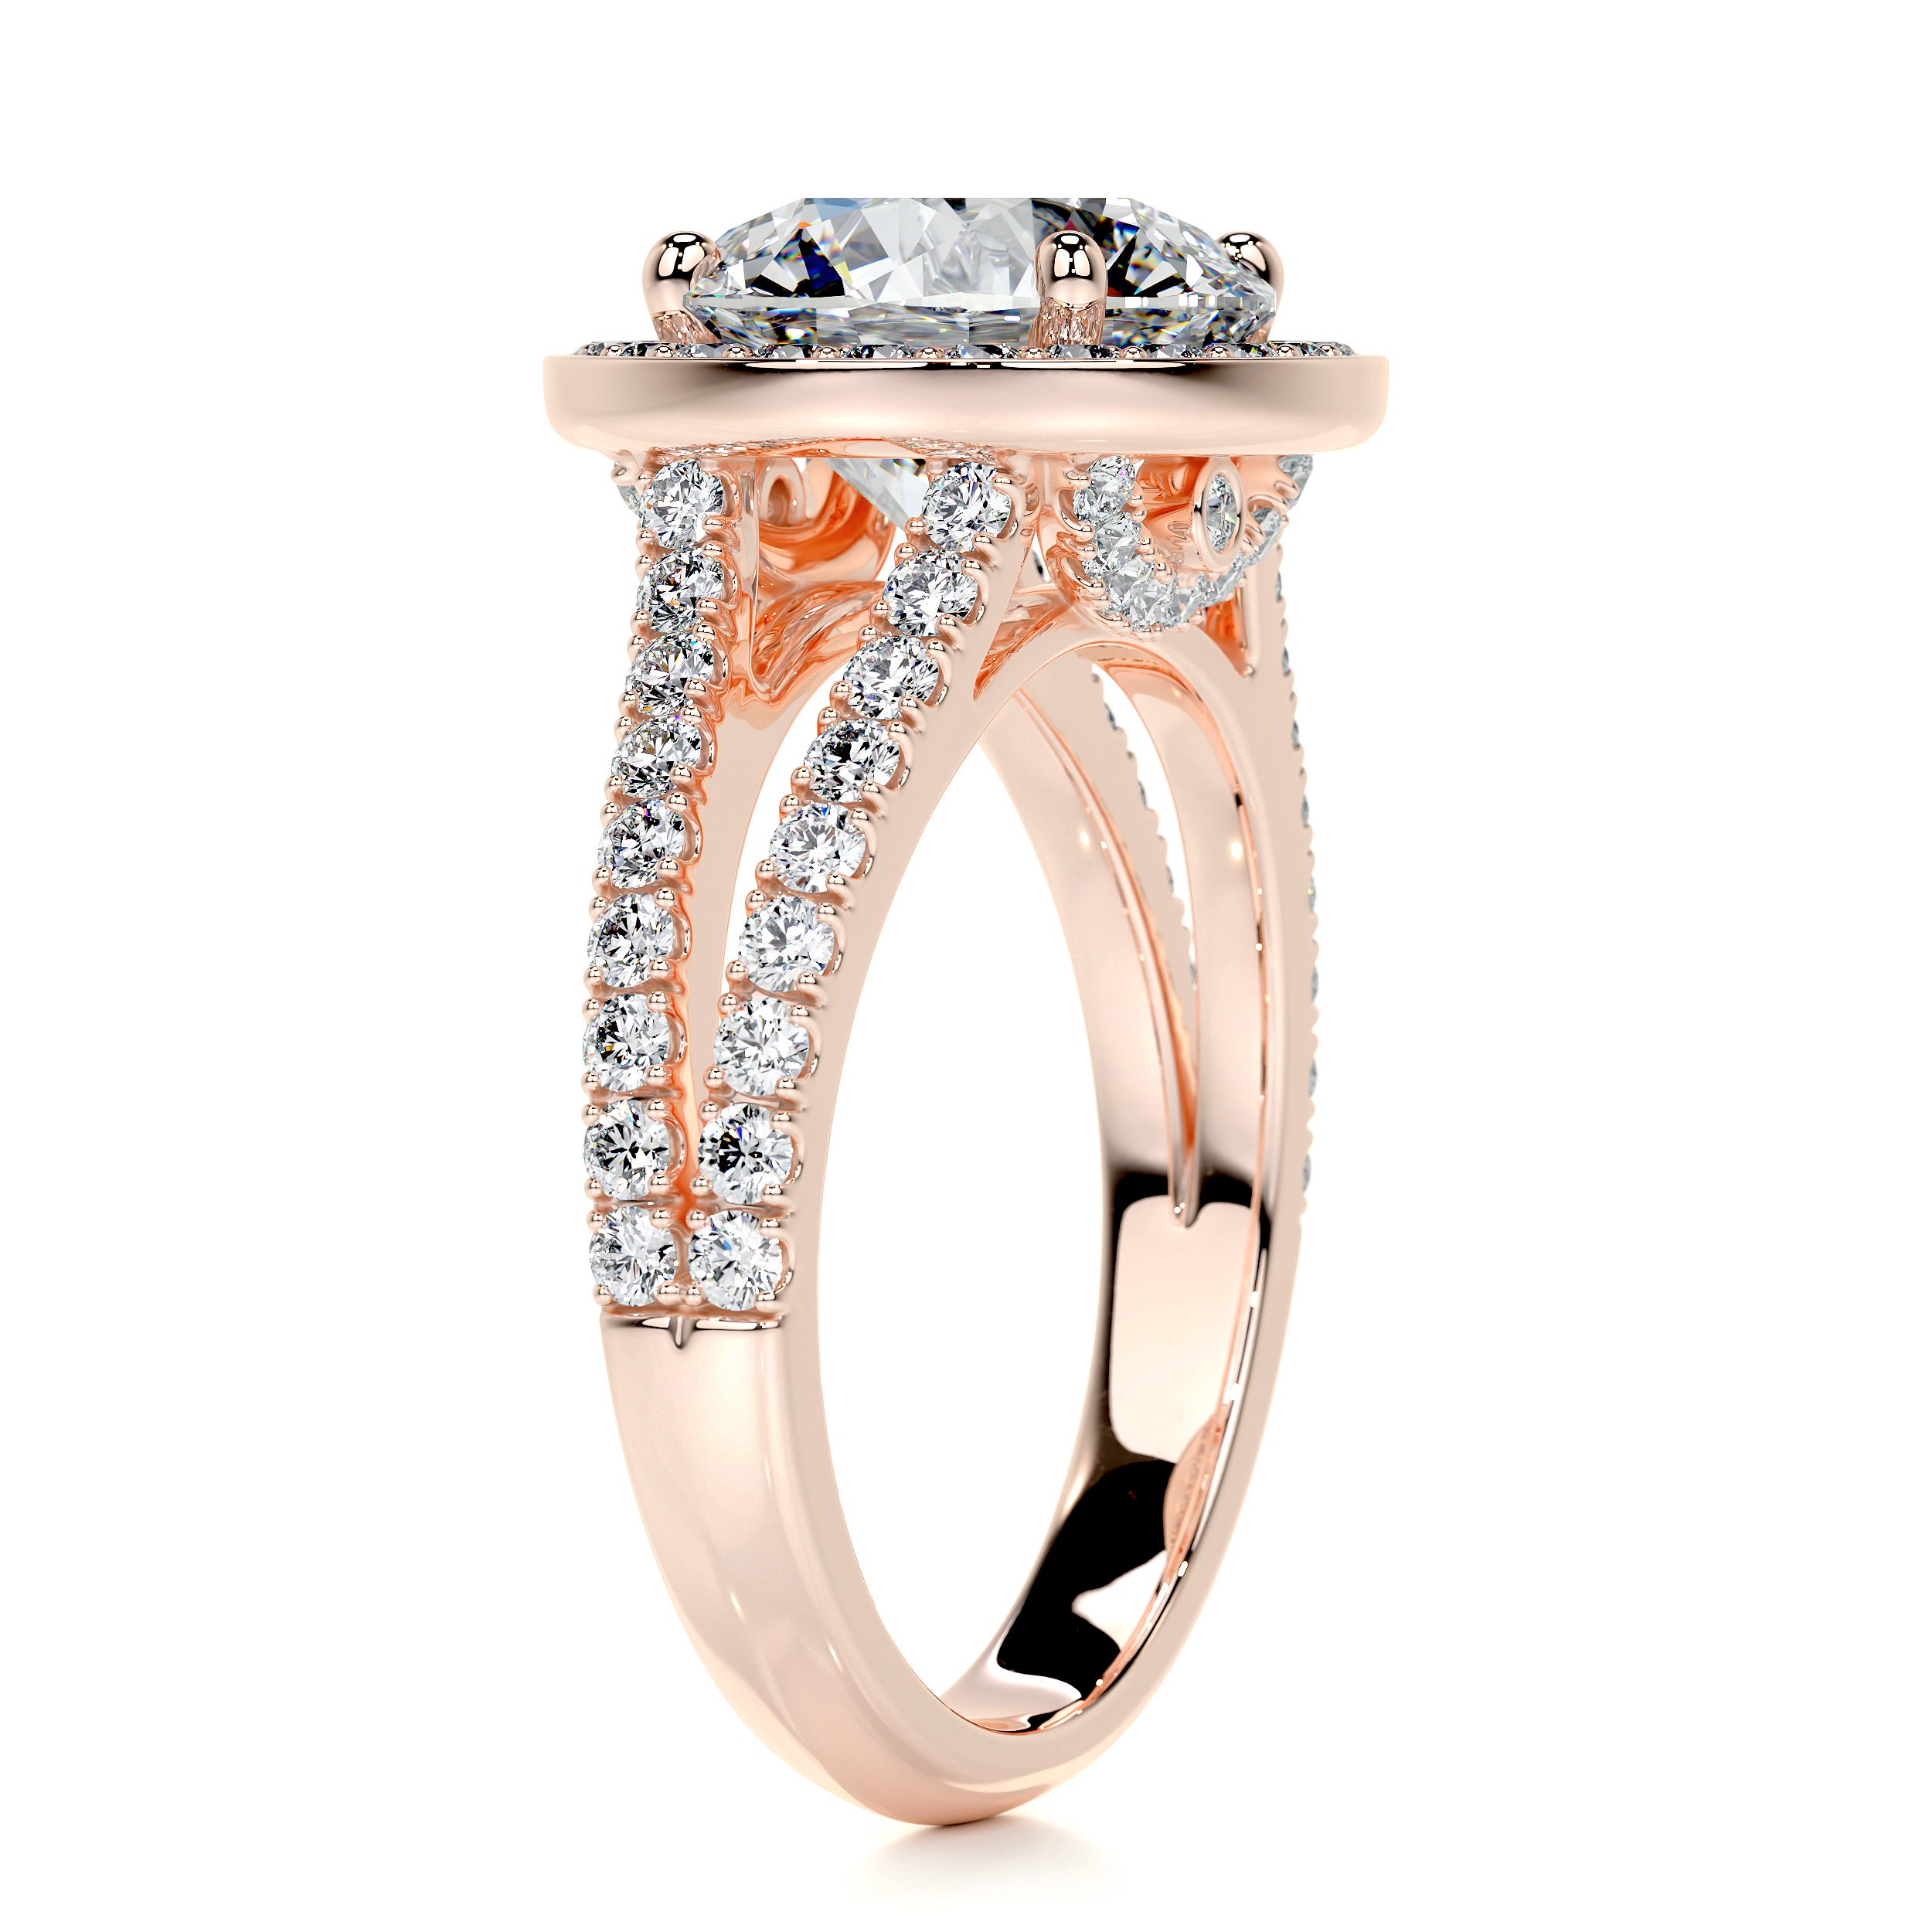 Camilla Diamond Engagement Ring   (2.75 Carat) -14K Rose Gold